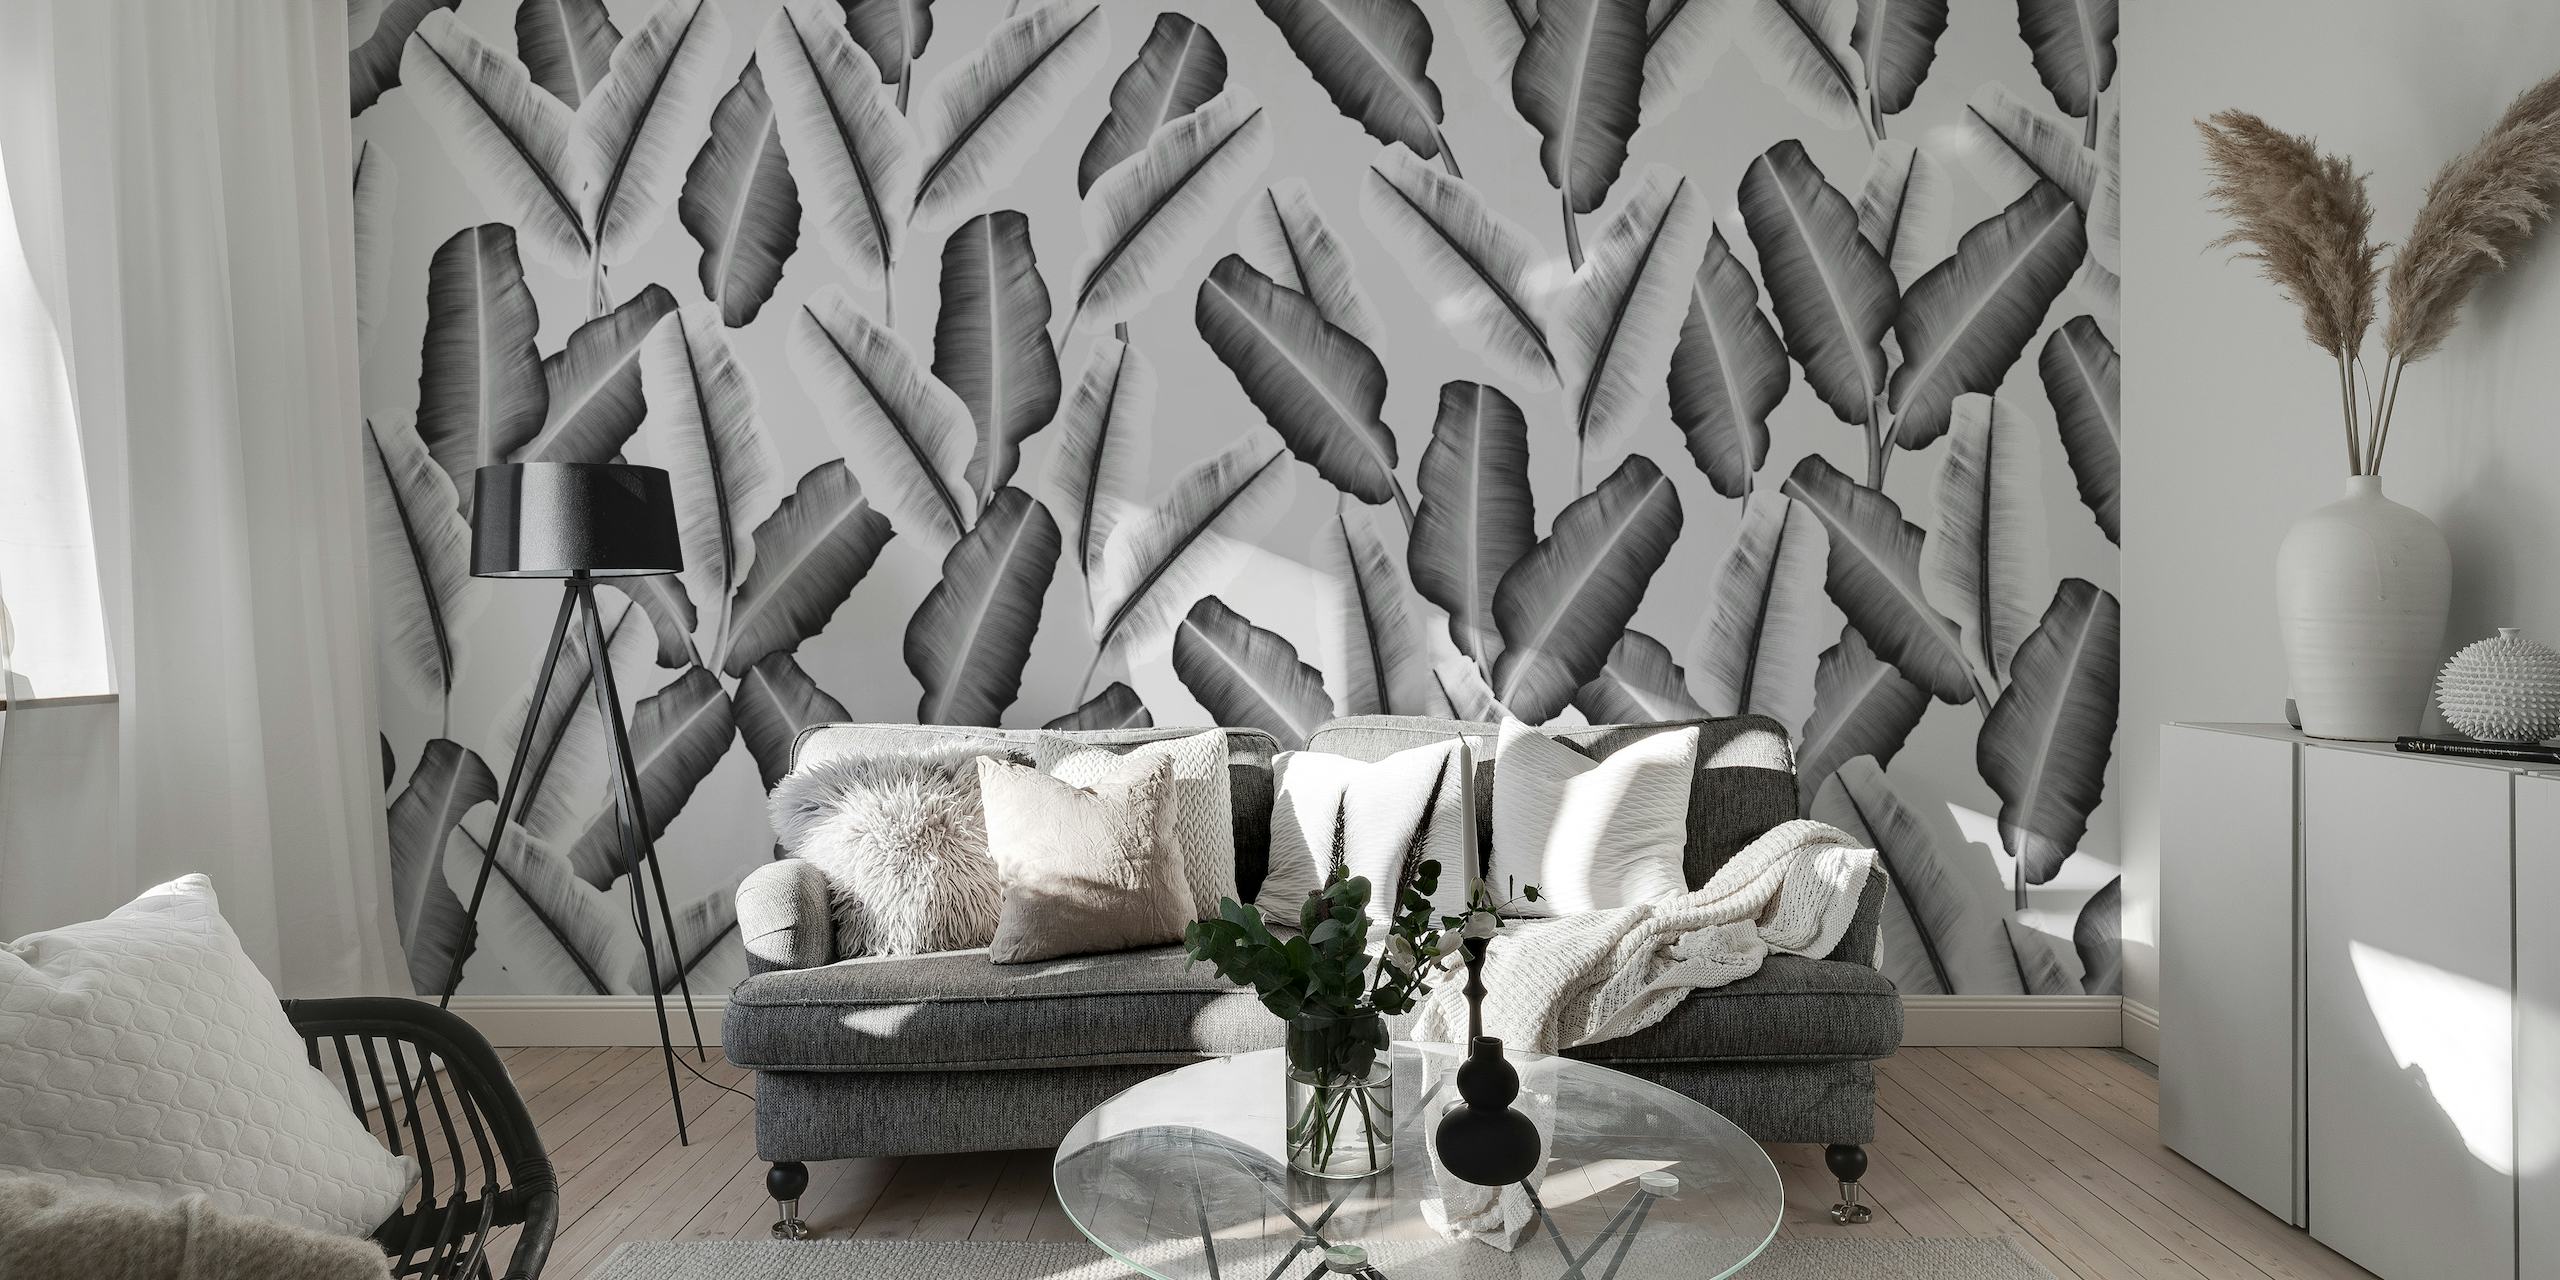 Stijlvolle muurschildering met tropisch bananenbladpatroon in grijstinten